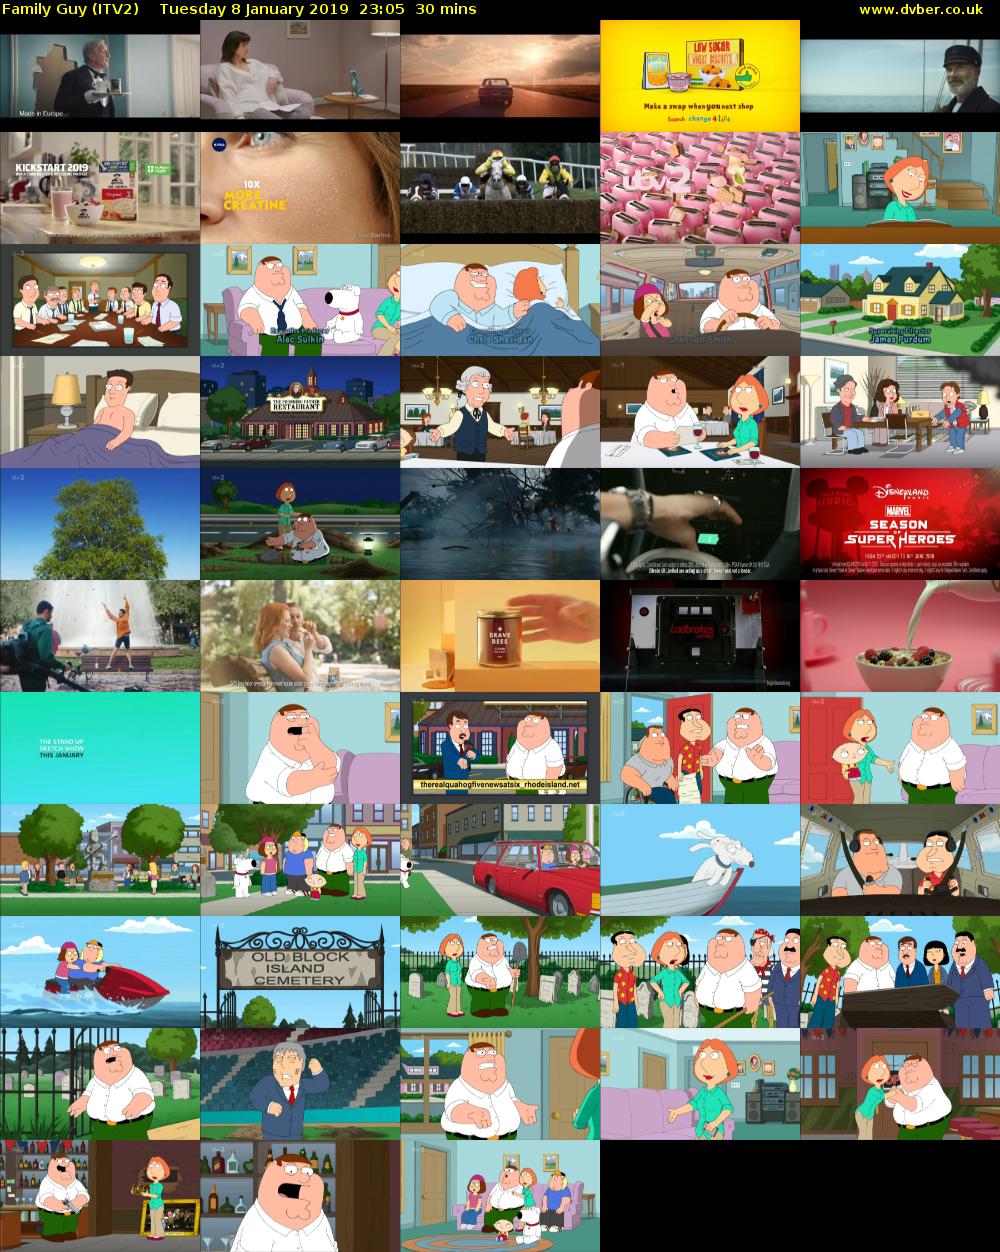 Family Guy (ITV2) Tuesday 8 January 2019 23:05 - 23:35